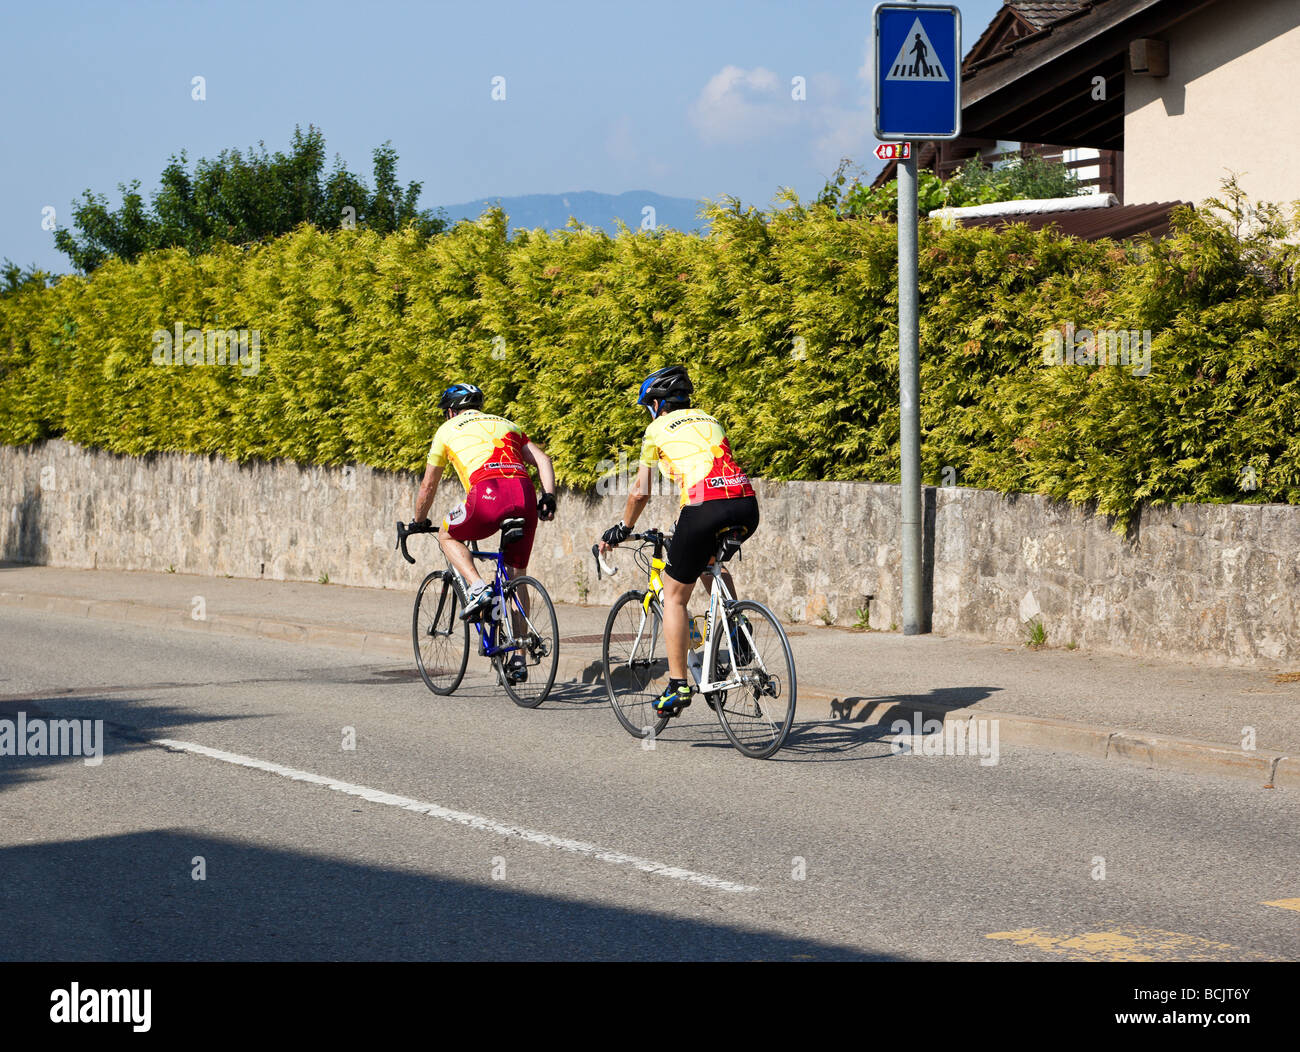 Homme mûr et les femmes équitation sport location de bicyclettes par Charles W. Lupica. Banque D'Images